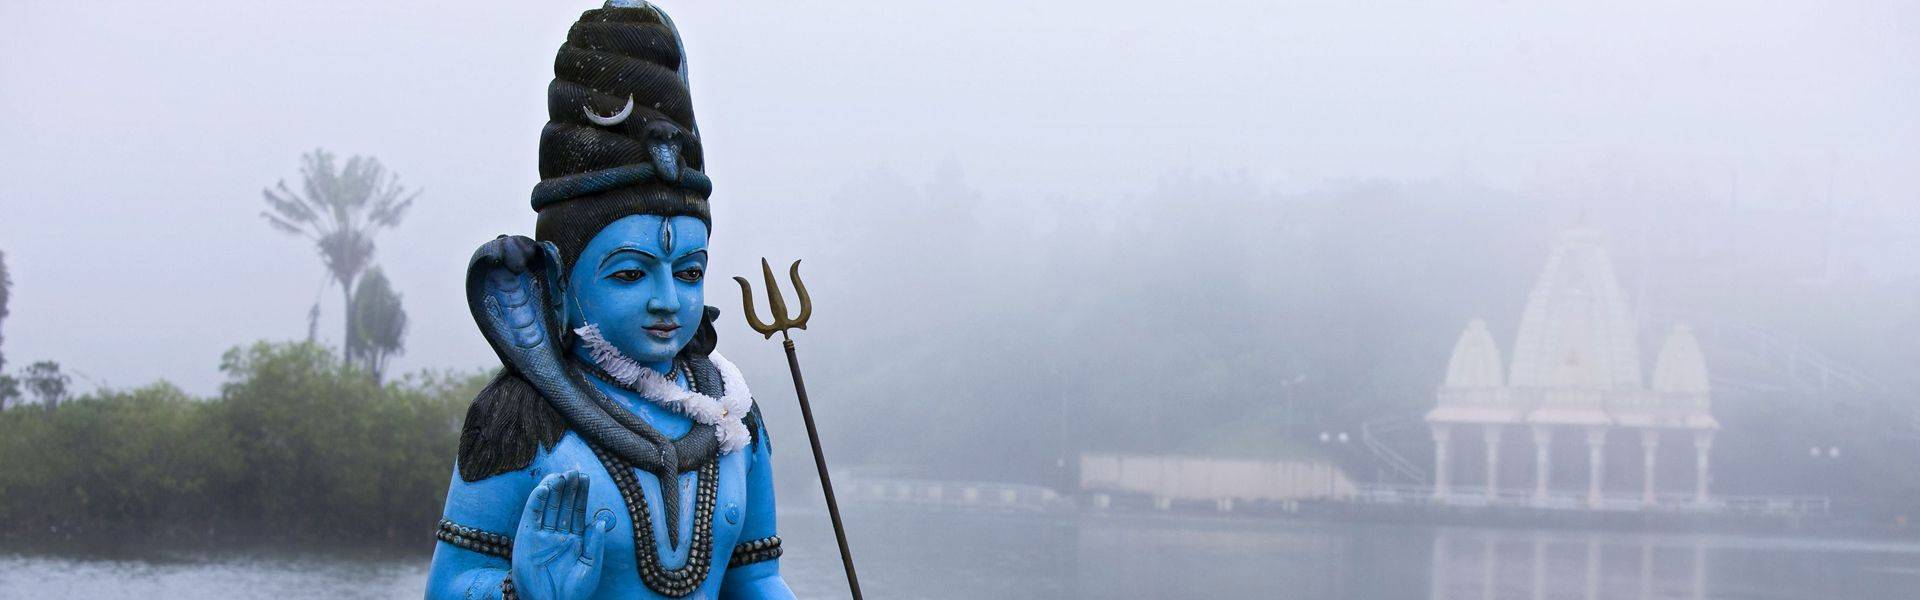 Pèlerinage vers le lac de Grand Bassin : La Grande nuit de Shiva